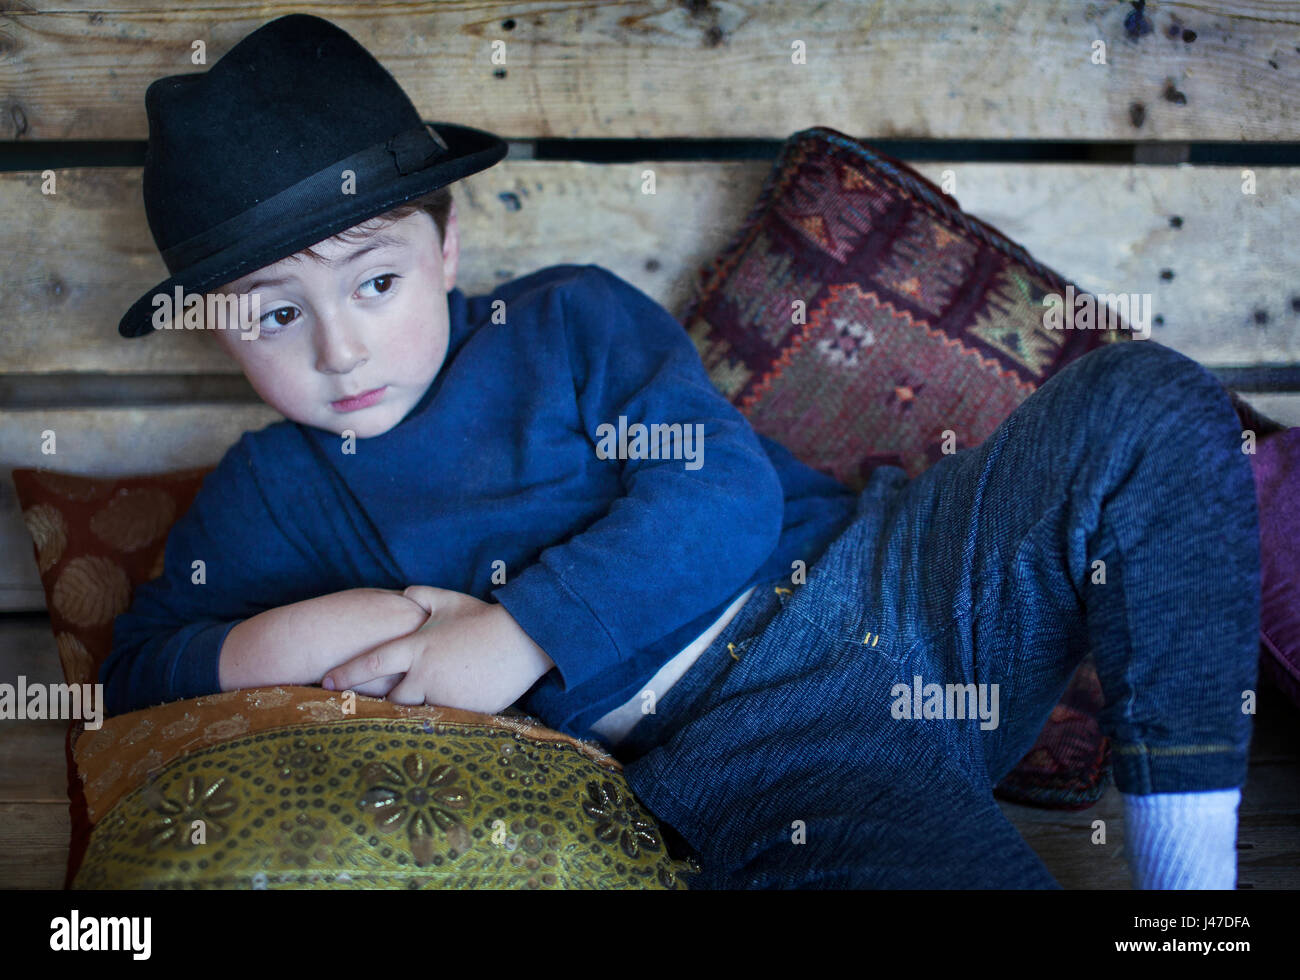 Süße kleine Junge mit braunen Haaren trägt einen schwarzen fedora Hut und ein blauer rollkragen pullover liegend auf einem hölzernen Sitzbank mit Kissen Stockfoto